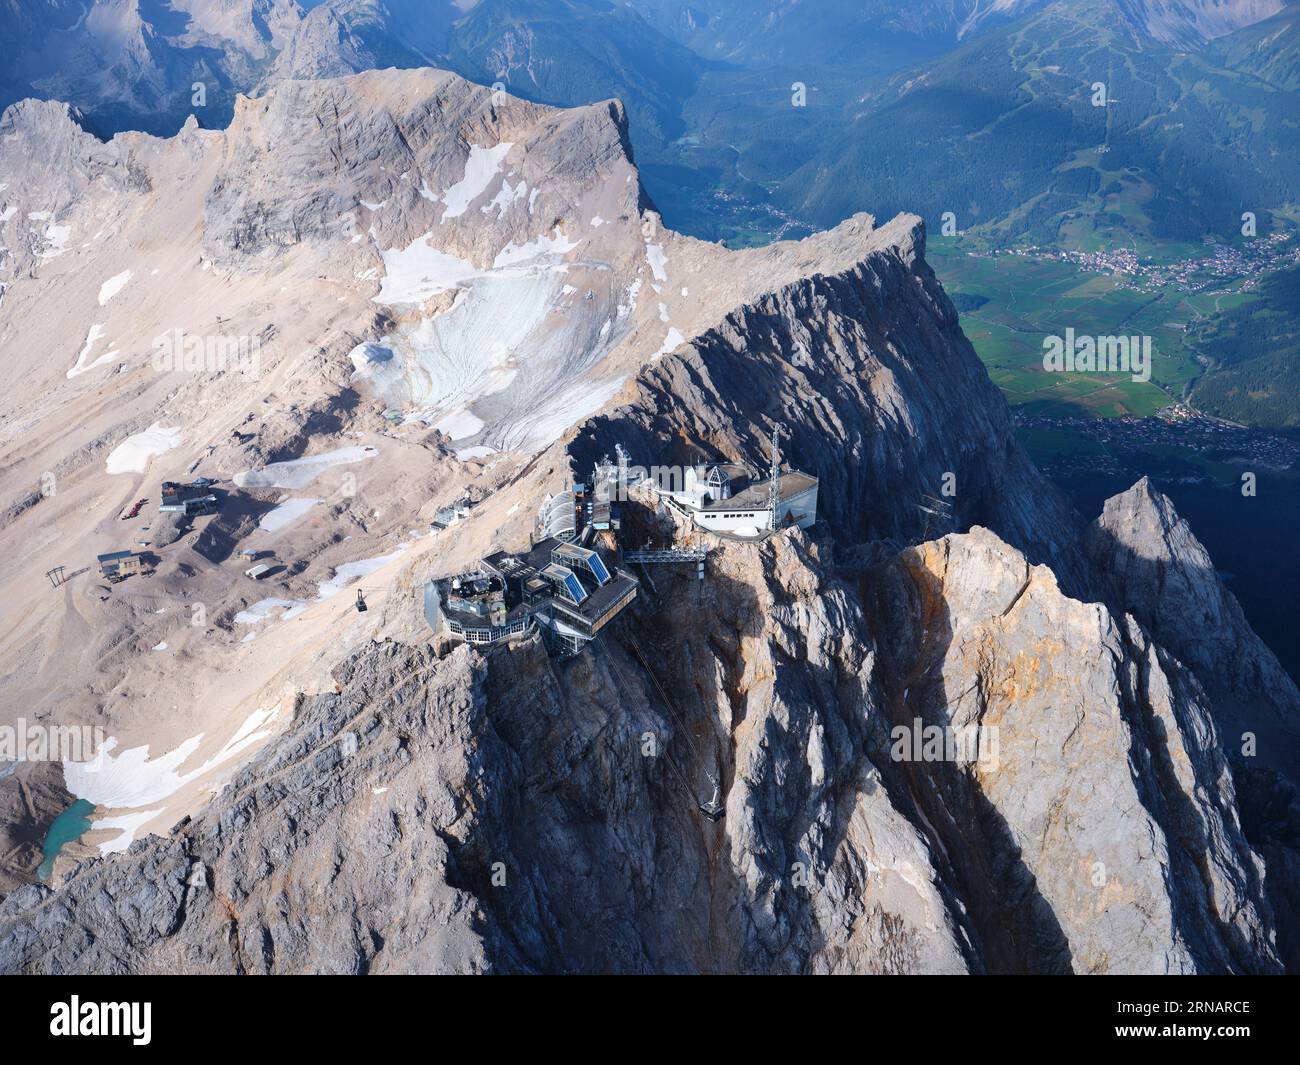 VUE AÉRIENNE. Sommet de la Zugspitze, à 2962 mètres d'altitude, c'est la plus haute montagne d'Allemagne. Garmisch-Partenkirchen, Bavière, Allemagne. Banque D'Images